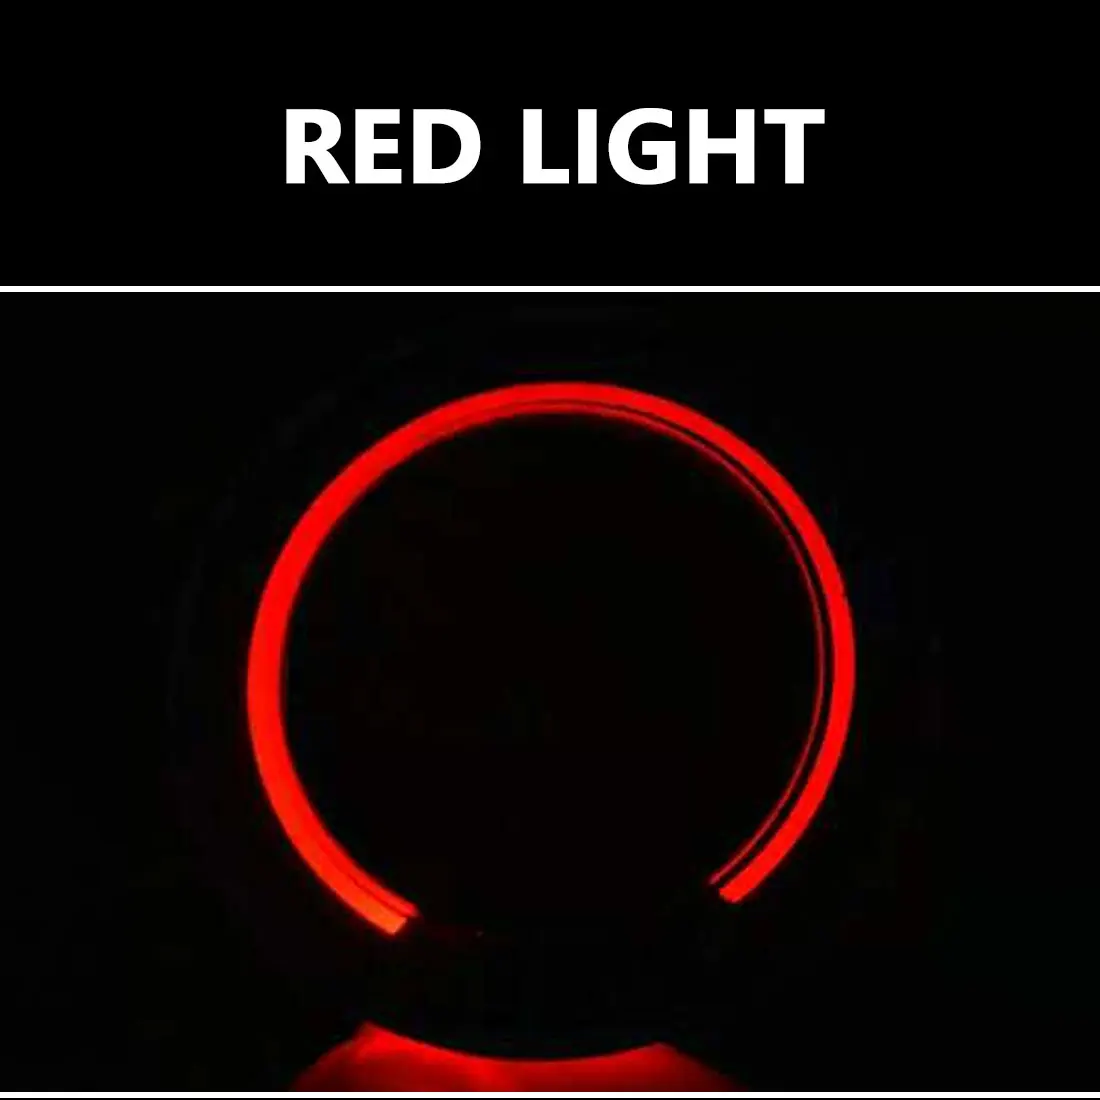 Dewtreetali, брелок для зажигания автомобиля, светодиодное освещение, наклейки для авто, аксессуары для Ford Focus 2 Focus 3 Kuga Mondeo - Название цвета: red light